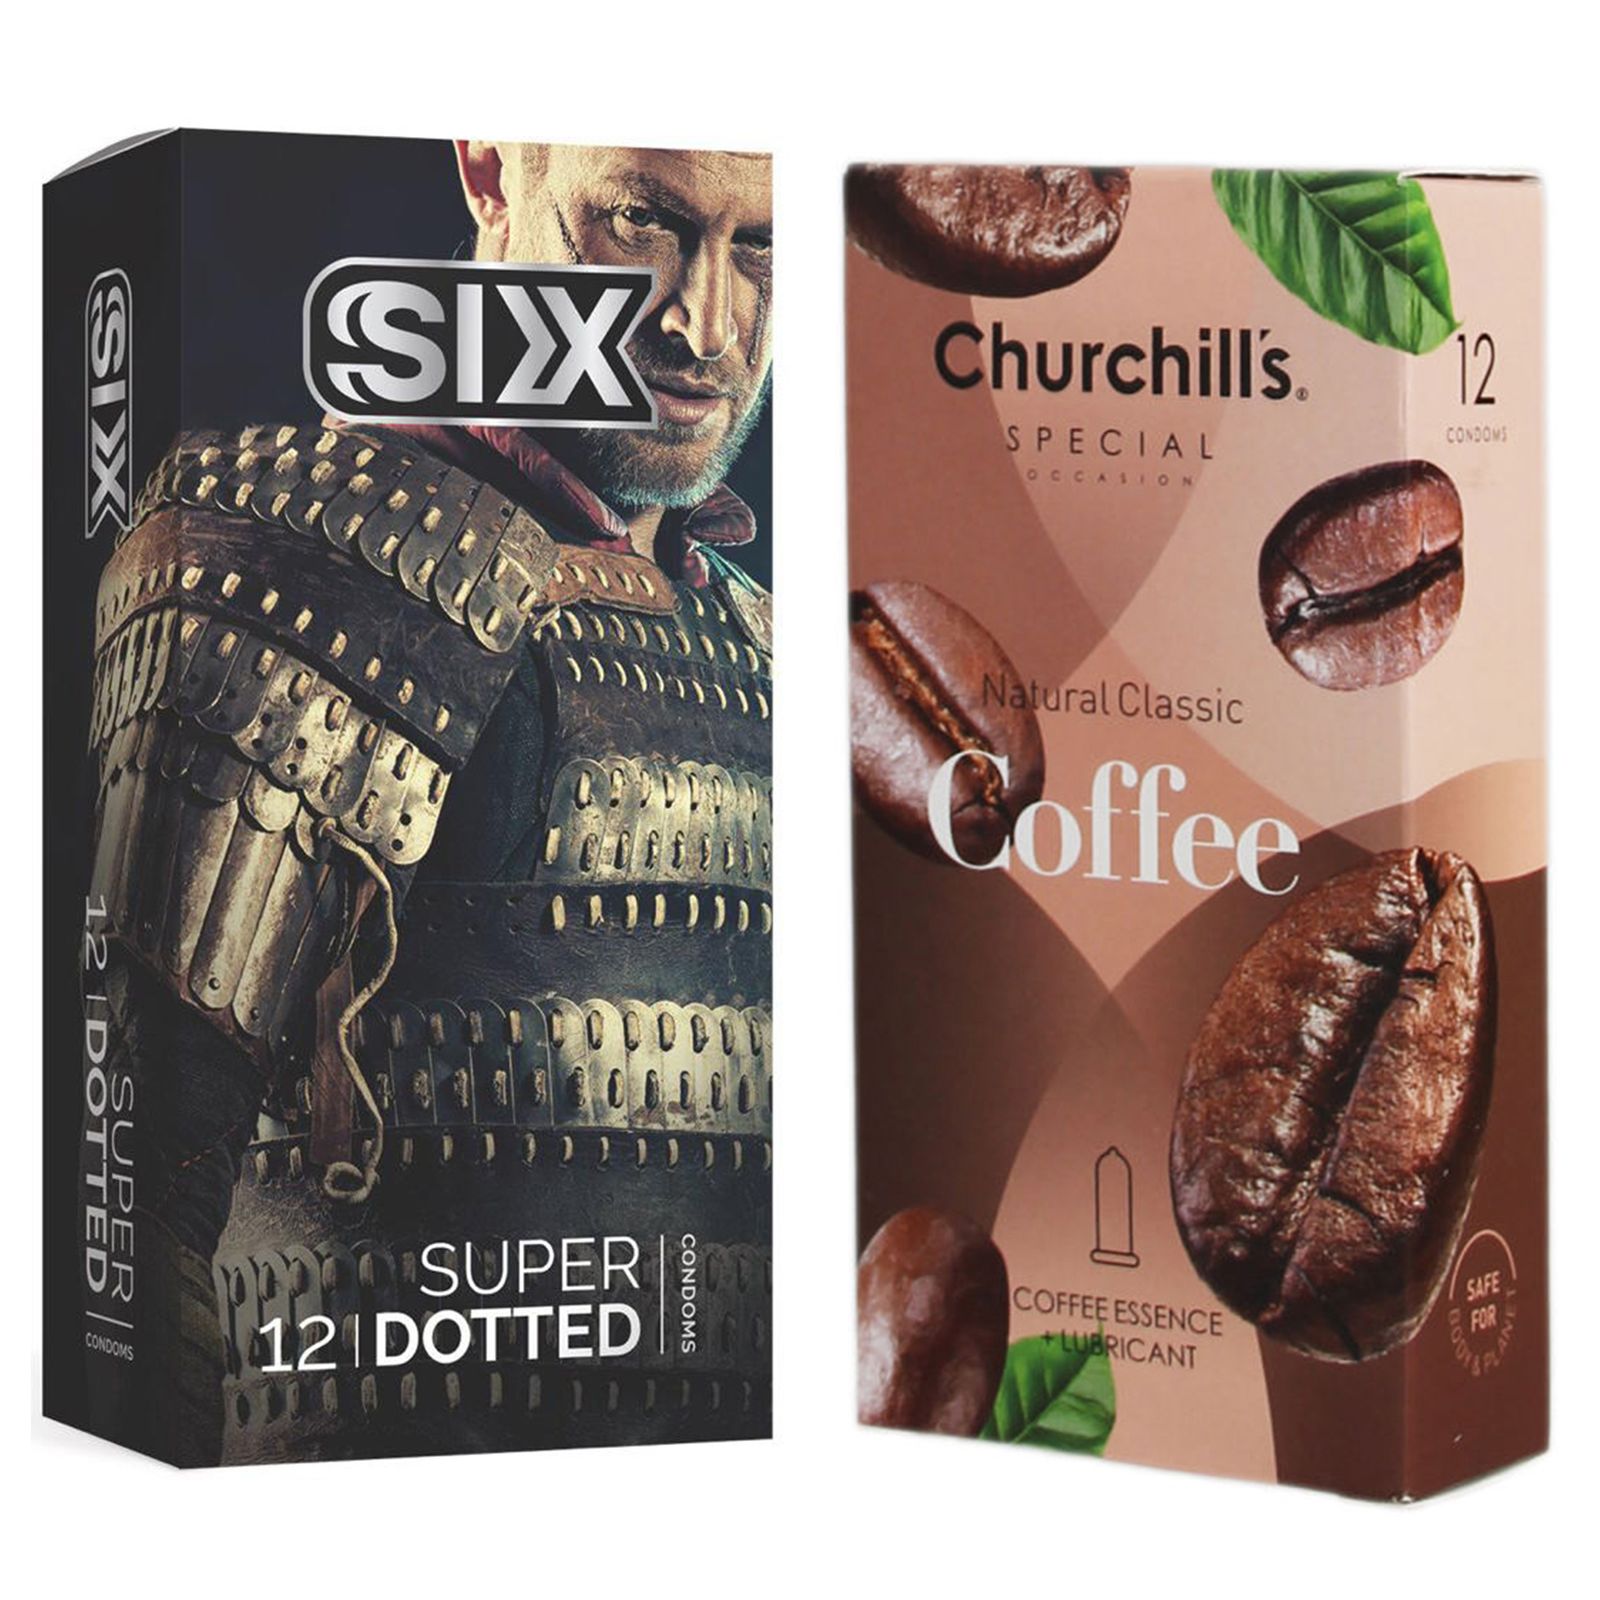 کاندوم چرچیلز مدل Coffee بسته 12 عددی به همراه کاندوم سیکس مدل خاردار بسته 12 عددی